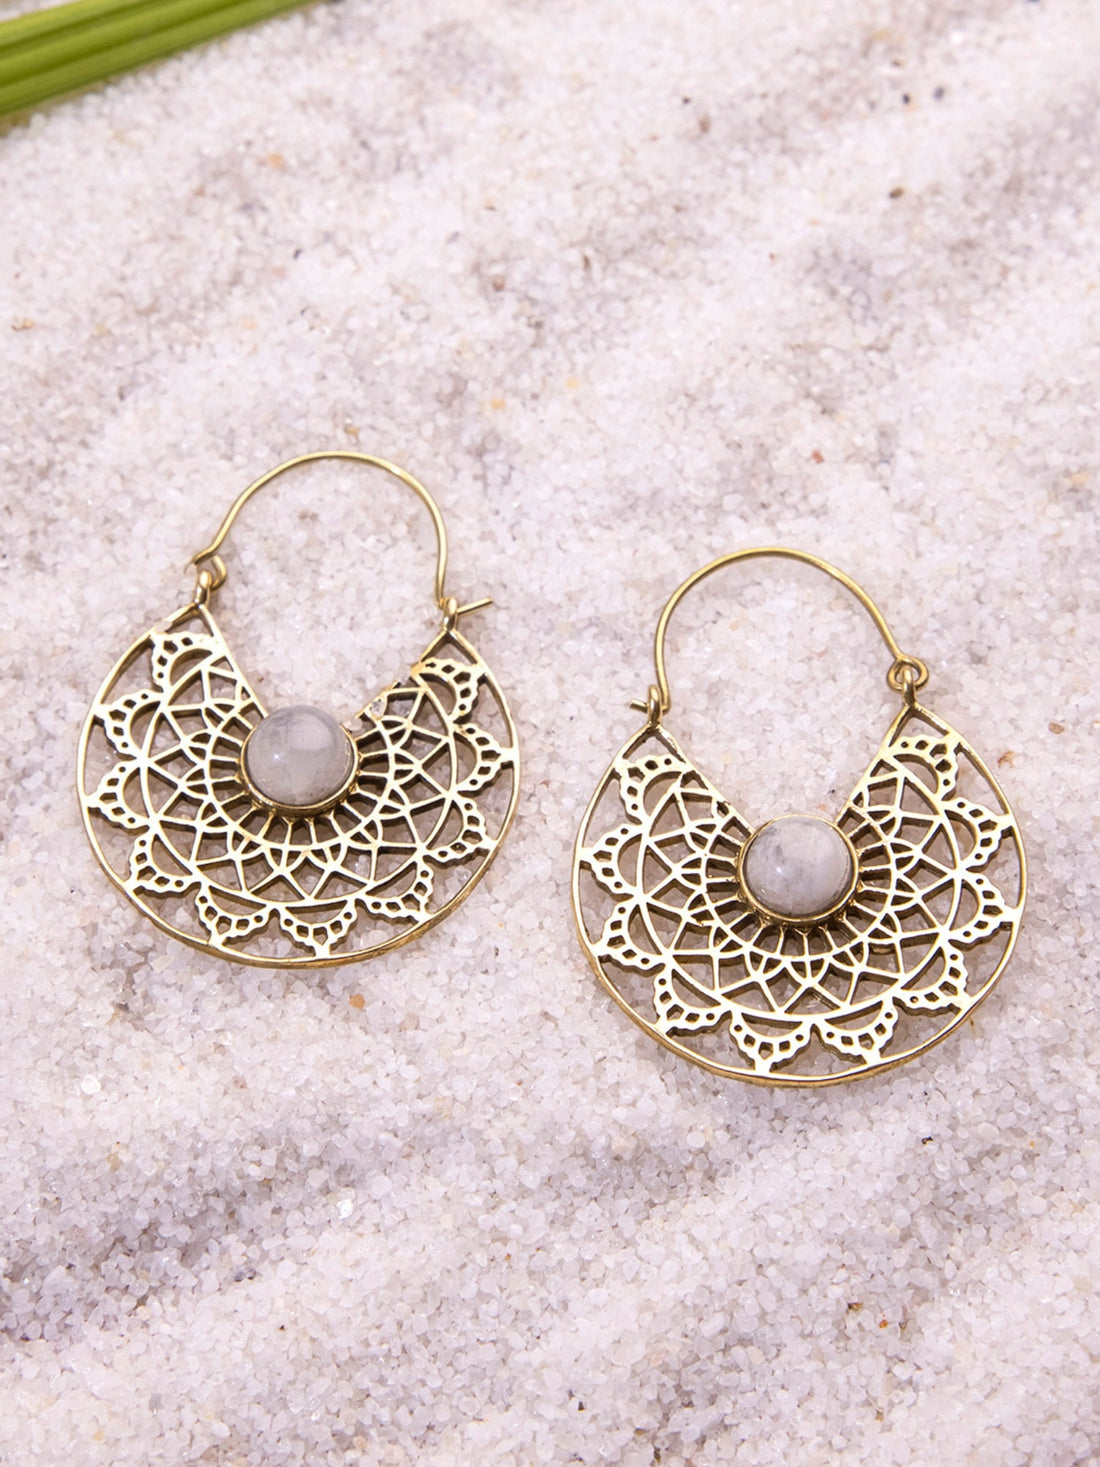 Festive Wear Chandbaalis Earrings - Minimal Gold-Plated Brass Earrings By Studio One Love